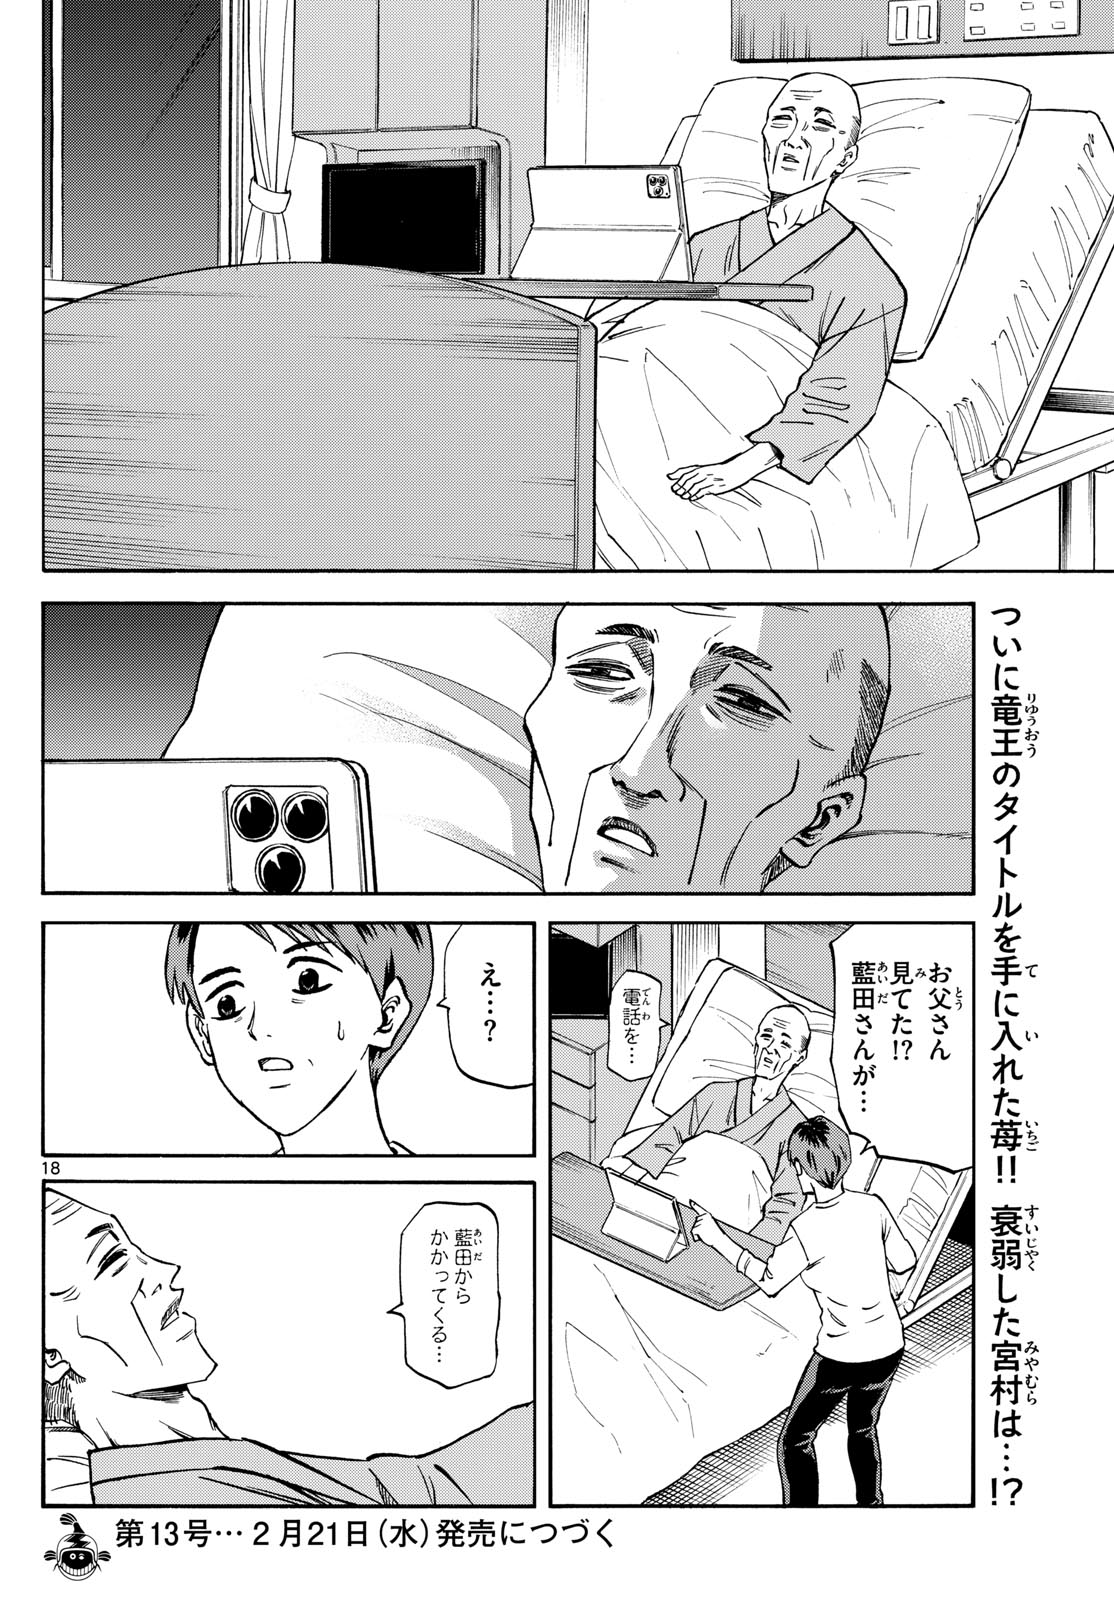 Tatsu to Ichigo - Chapter 179 - Page 18